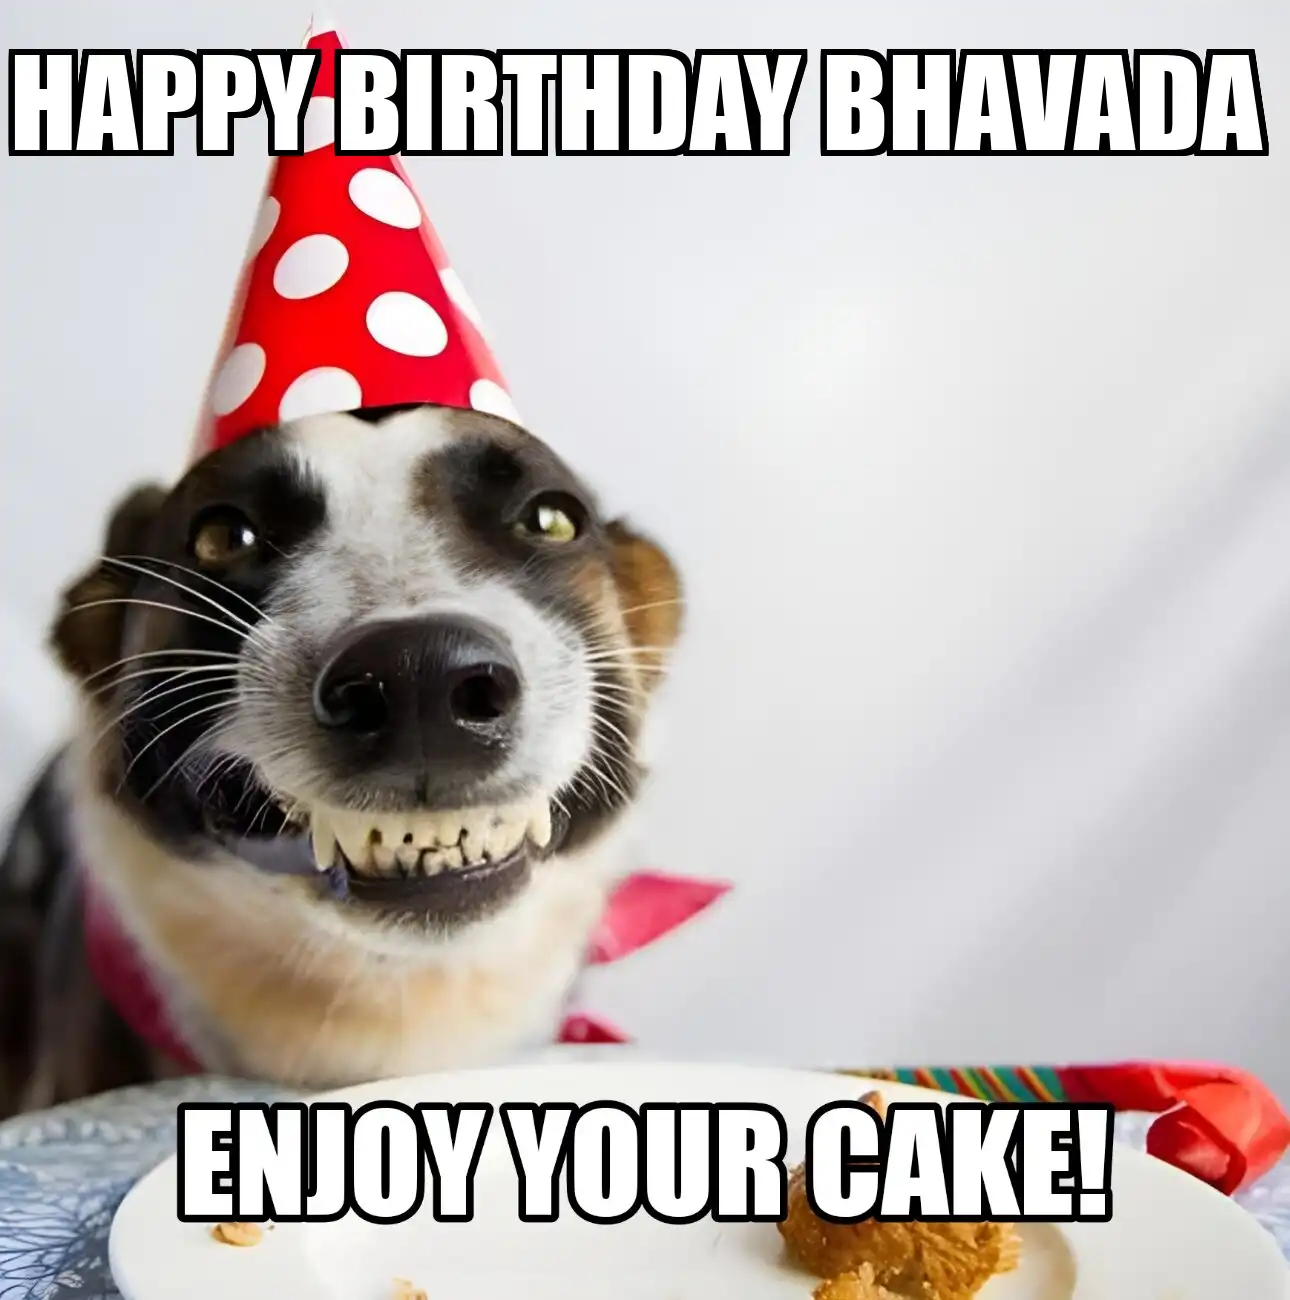 Happy Birthday Bhavada Enjoy Your Cake Dog Meme